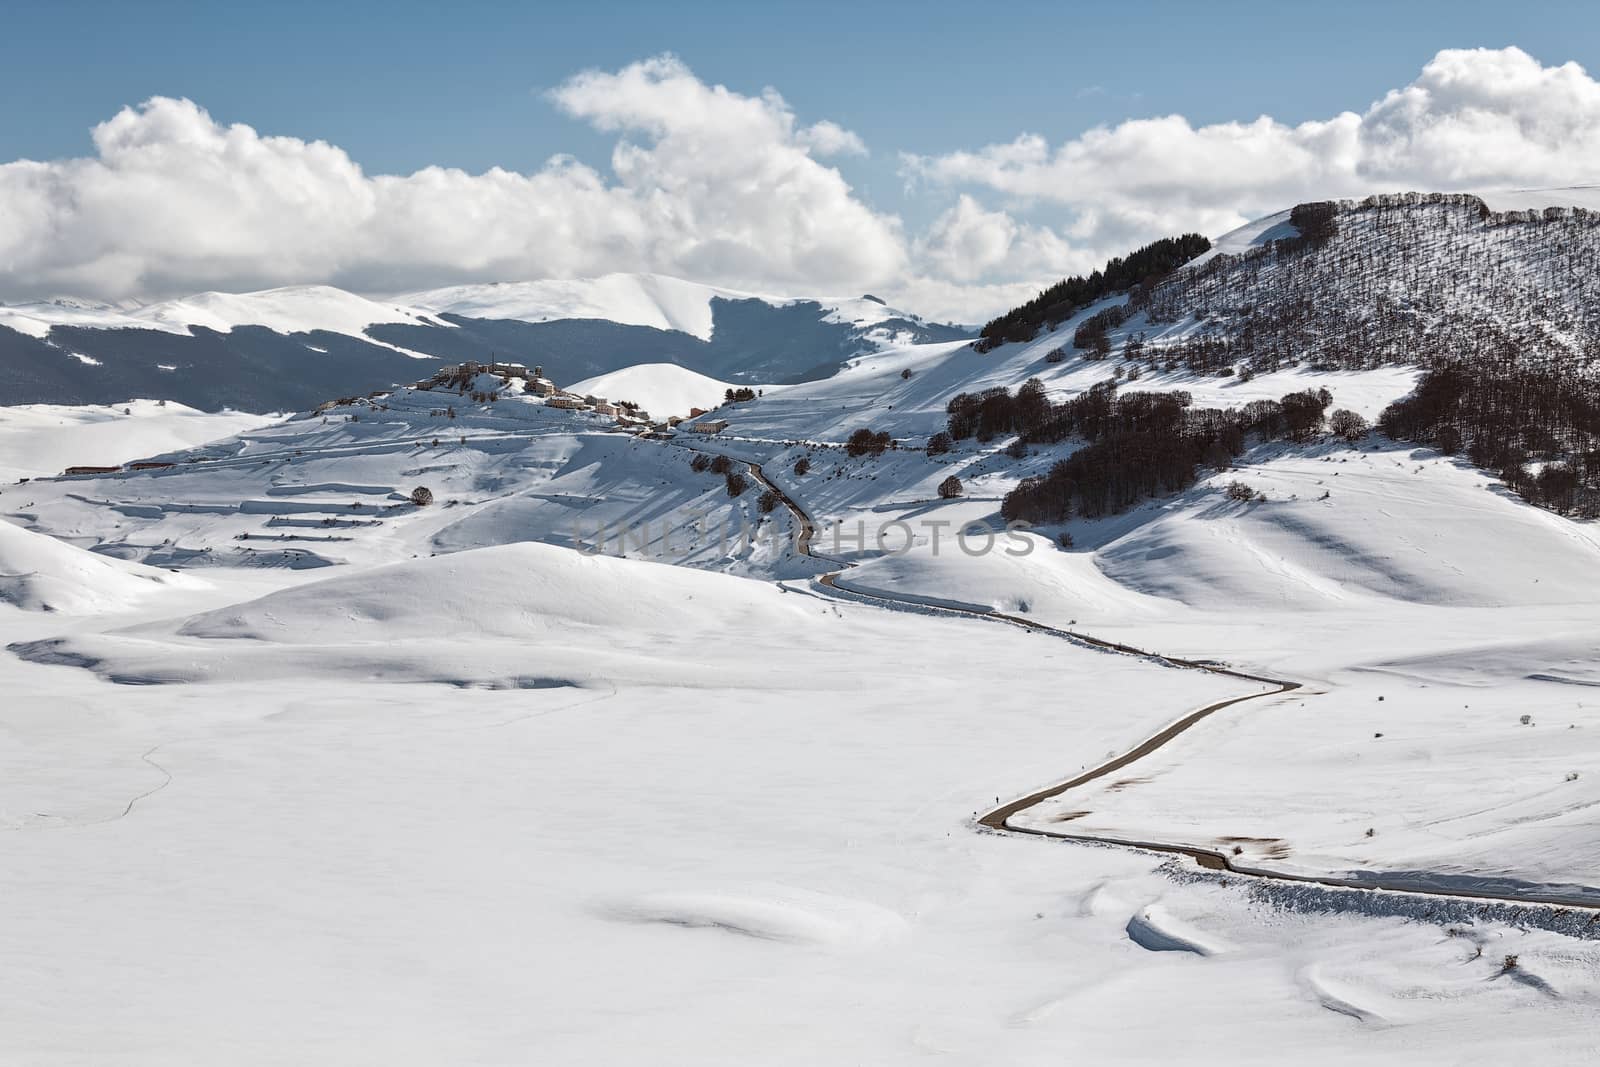 Castelluccio of Norcia in winter by LuigiMorbidelli